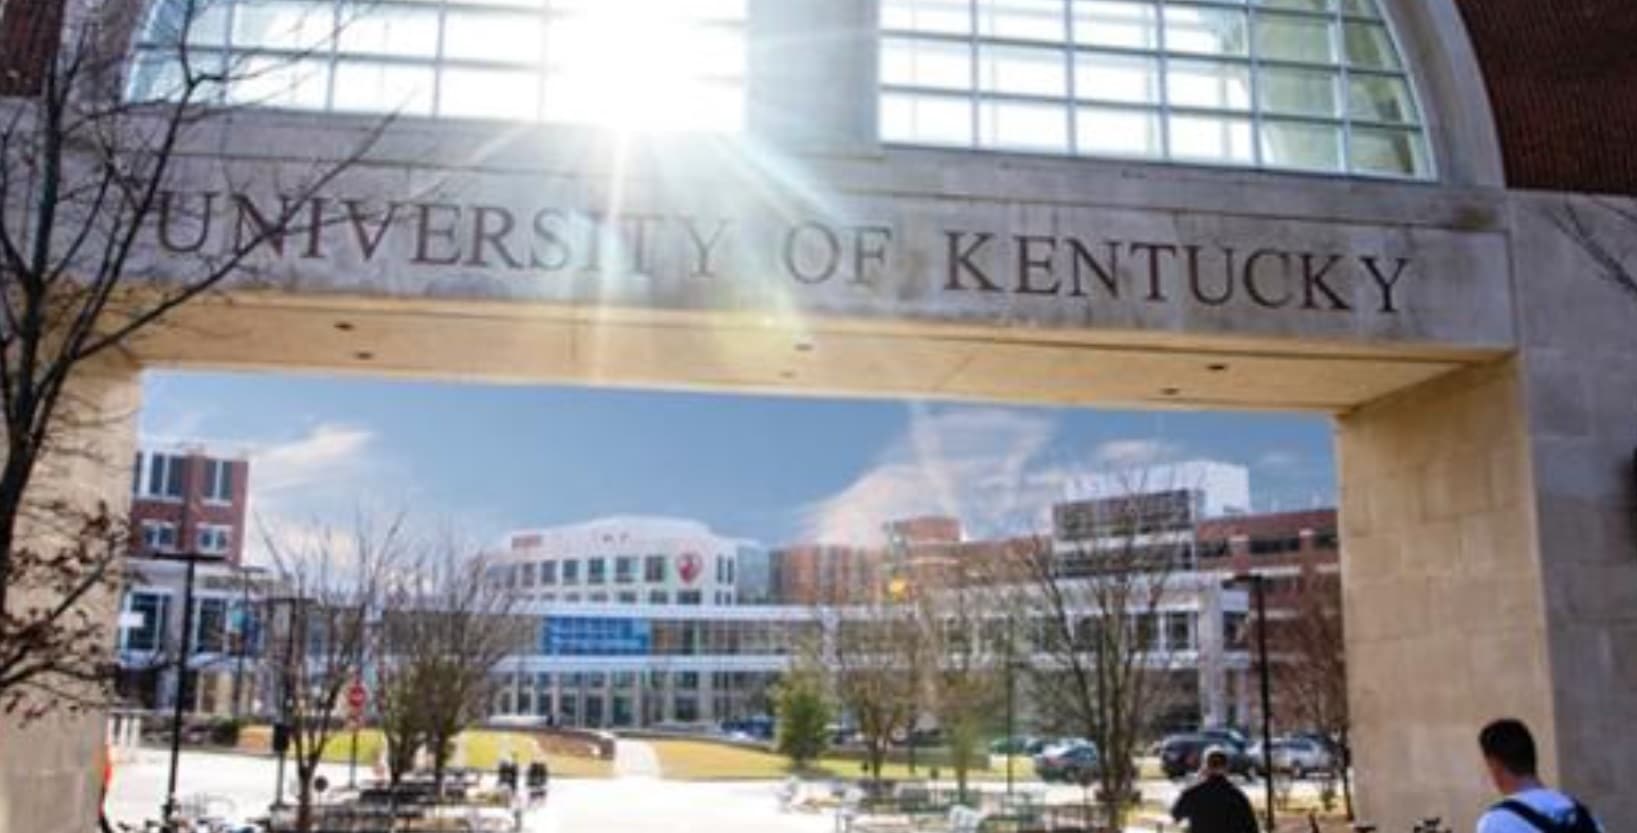 ACS, con Turner, se adjudica un contrato de 170 millones con la Universidad de Kentucky